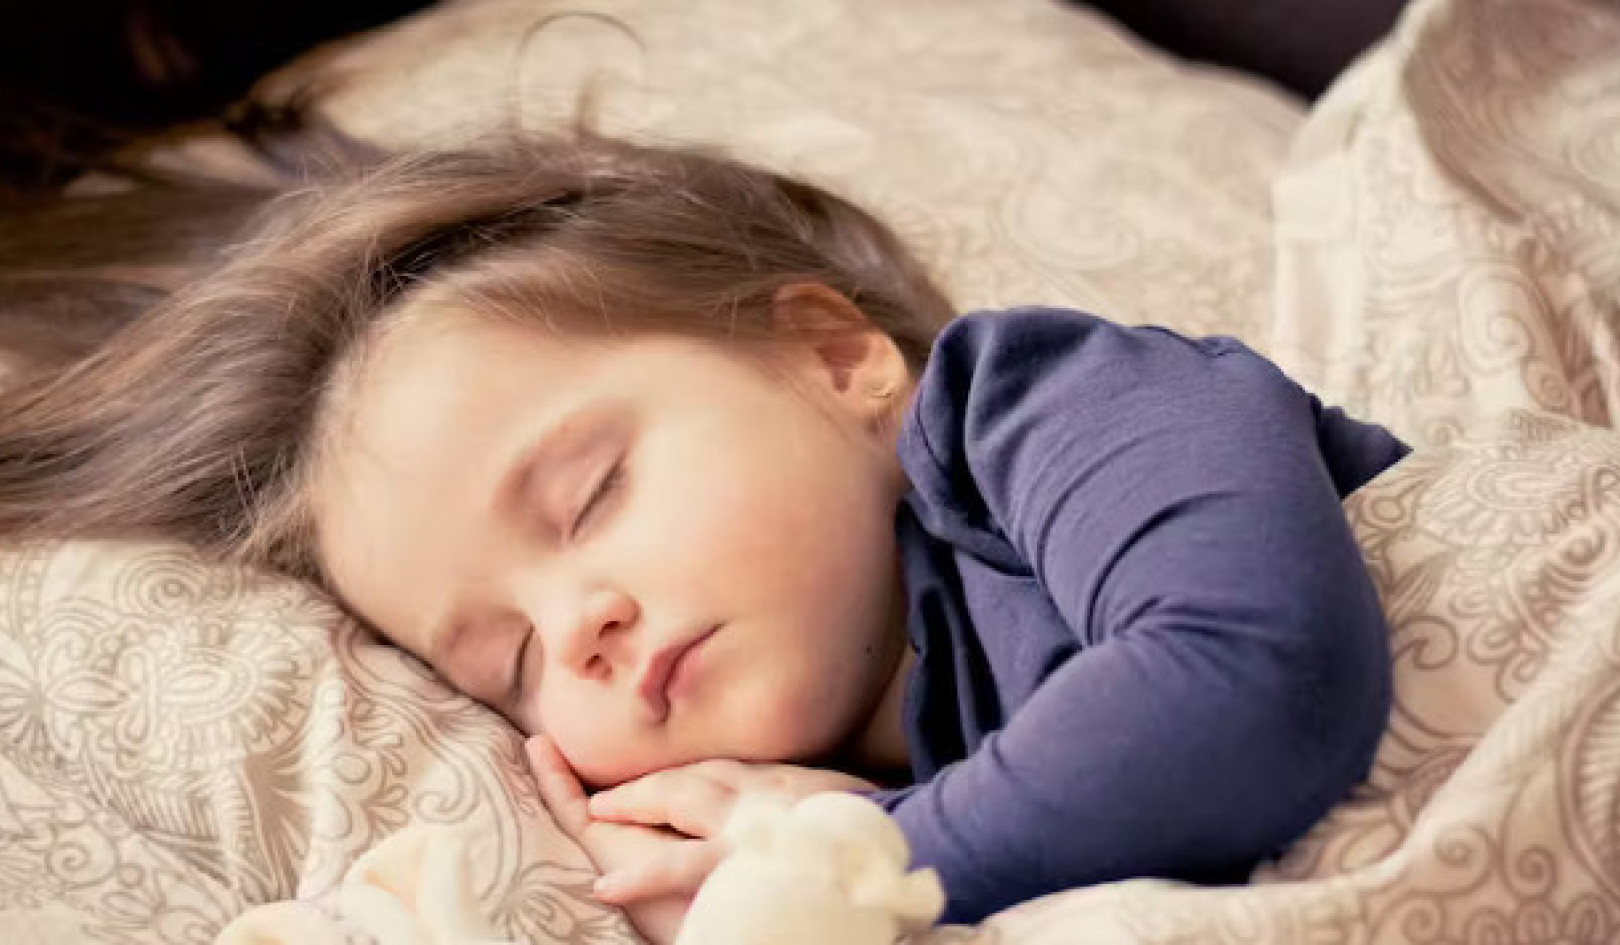 يستخدم العديد من الآباء علكات الميلاتونين لمساعدة الأطفال على النوم